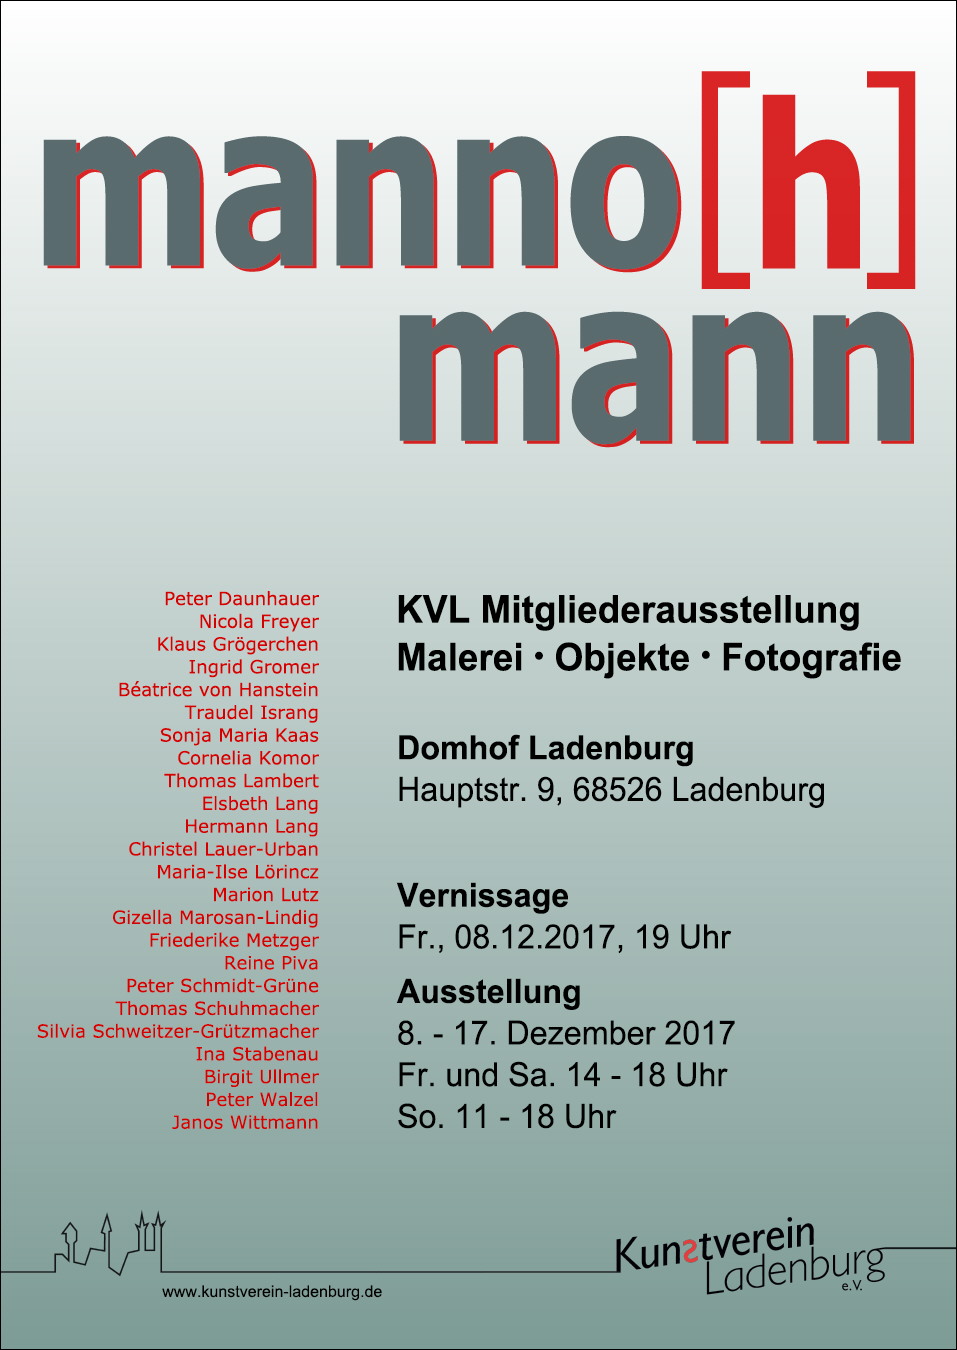 /images/kvl/Ausstellungen/20171208_Mannomann/original/00_plakat mannohmann.JPG